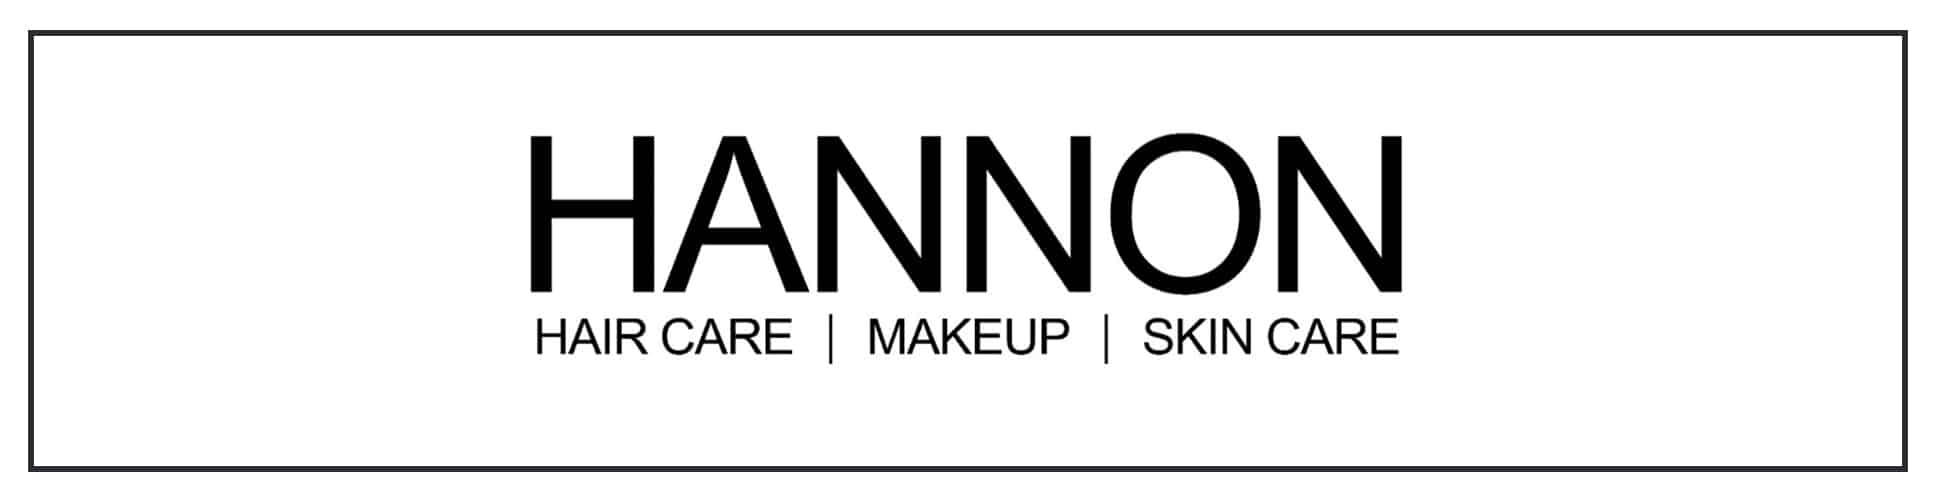 Hannon haircare makeup care logo.